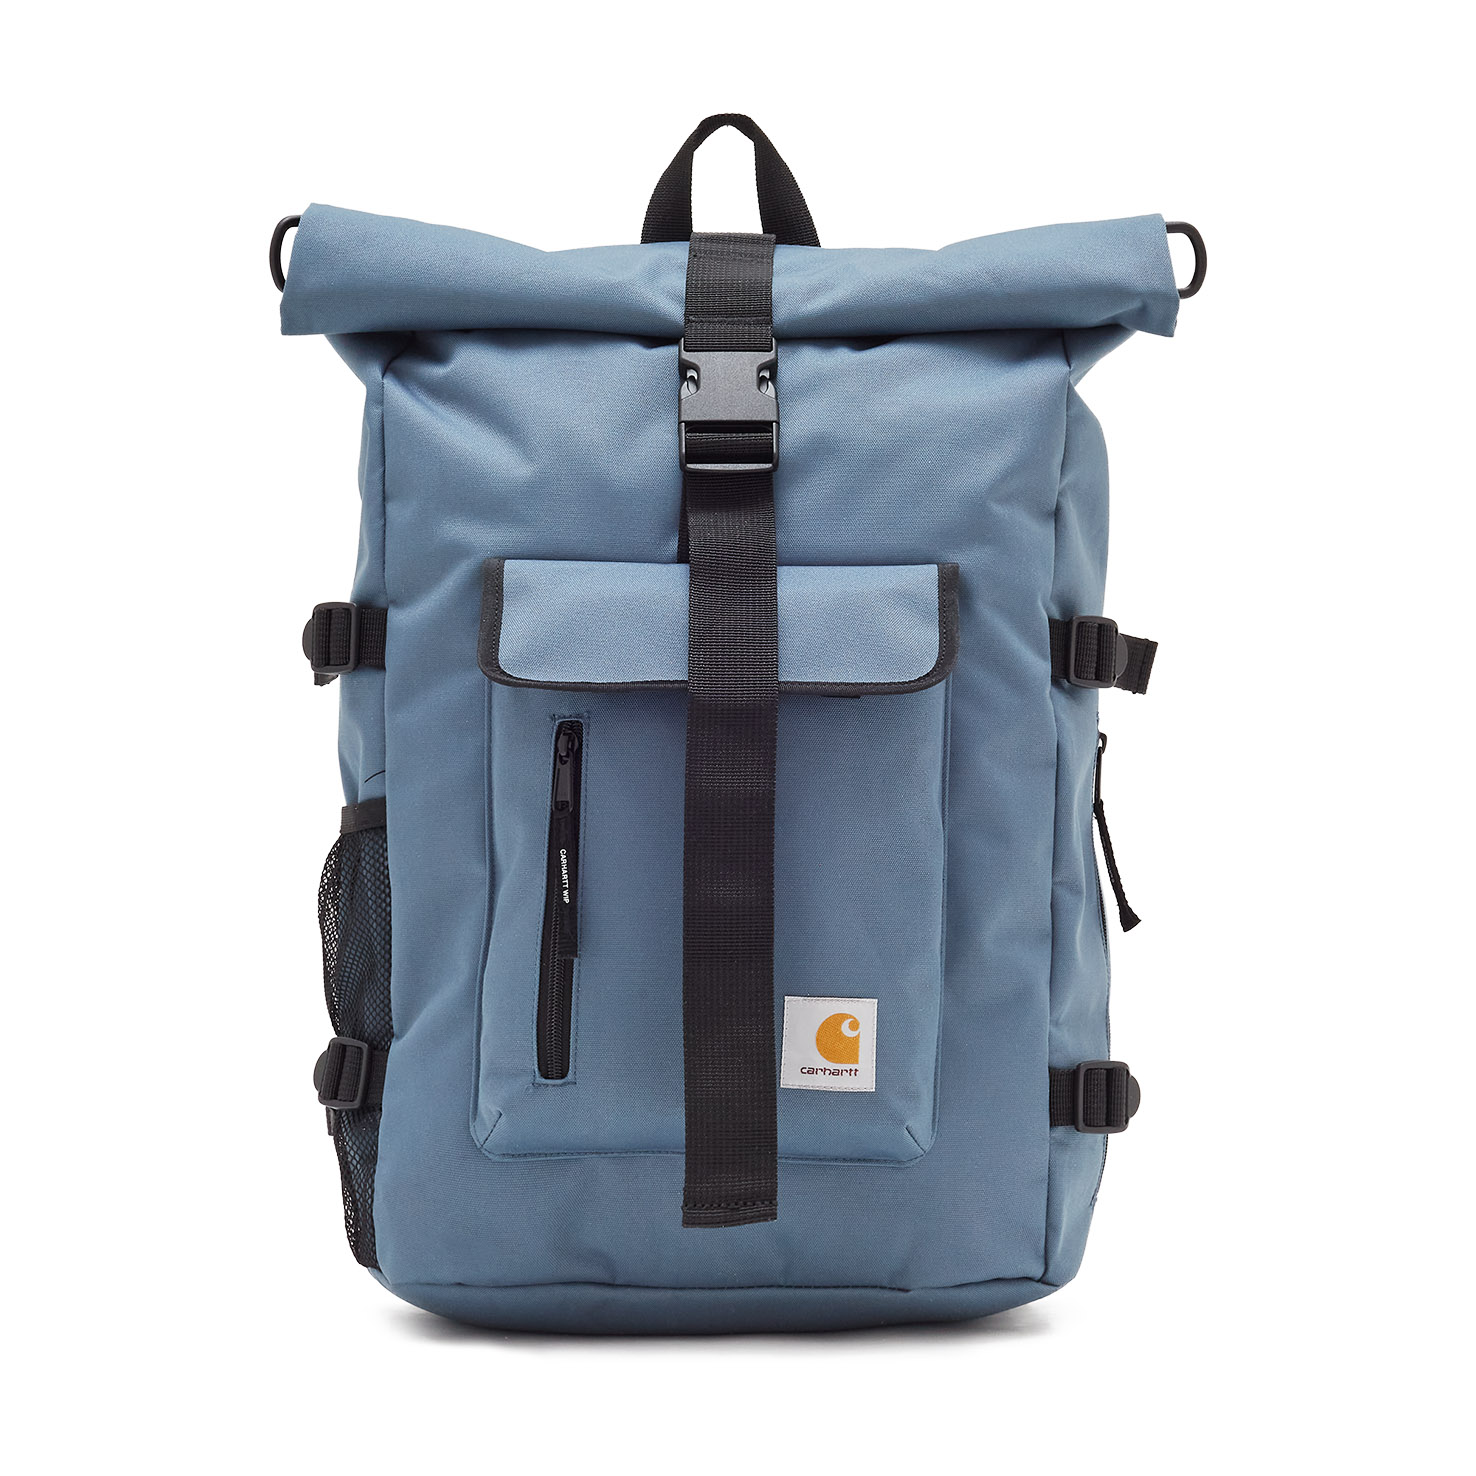 Philis Backpack CARHARTT, размер Один размер, цвет синий